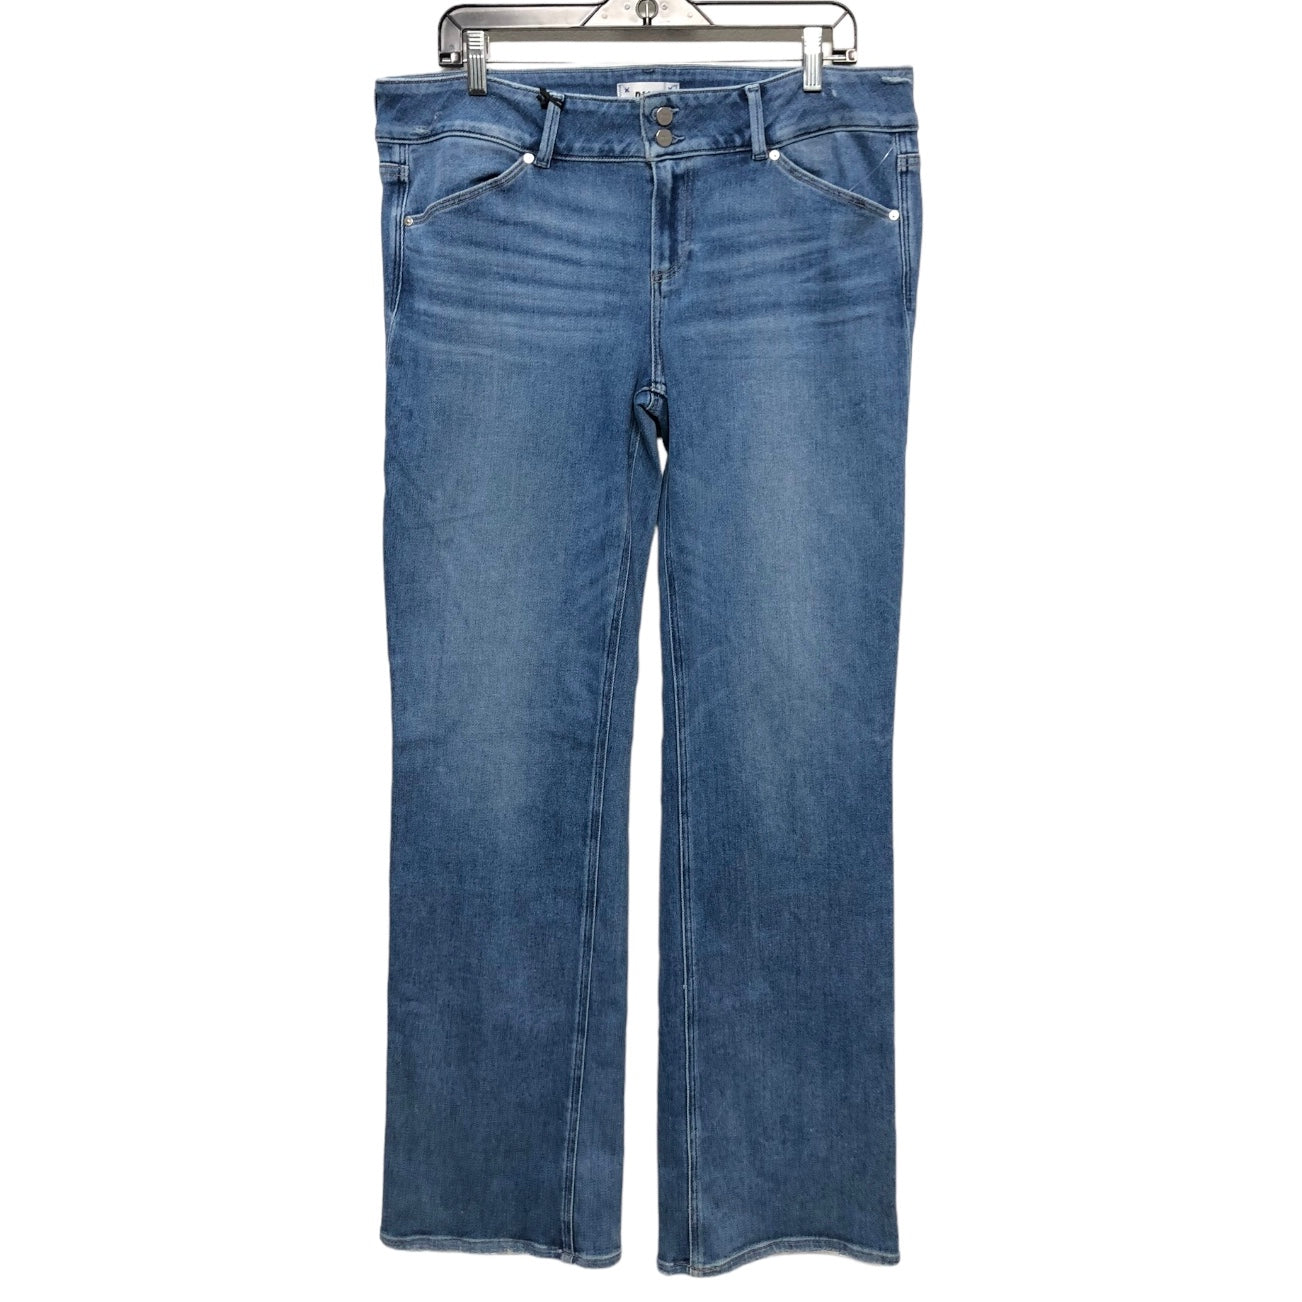 Blue Denim Jeans Straight Paige, Size 16